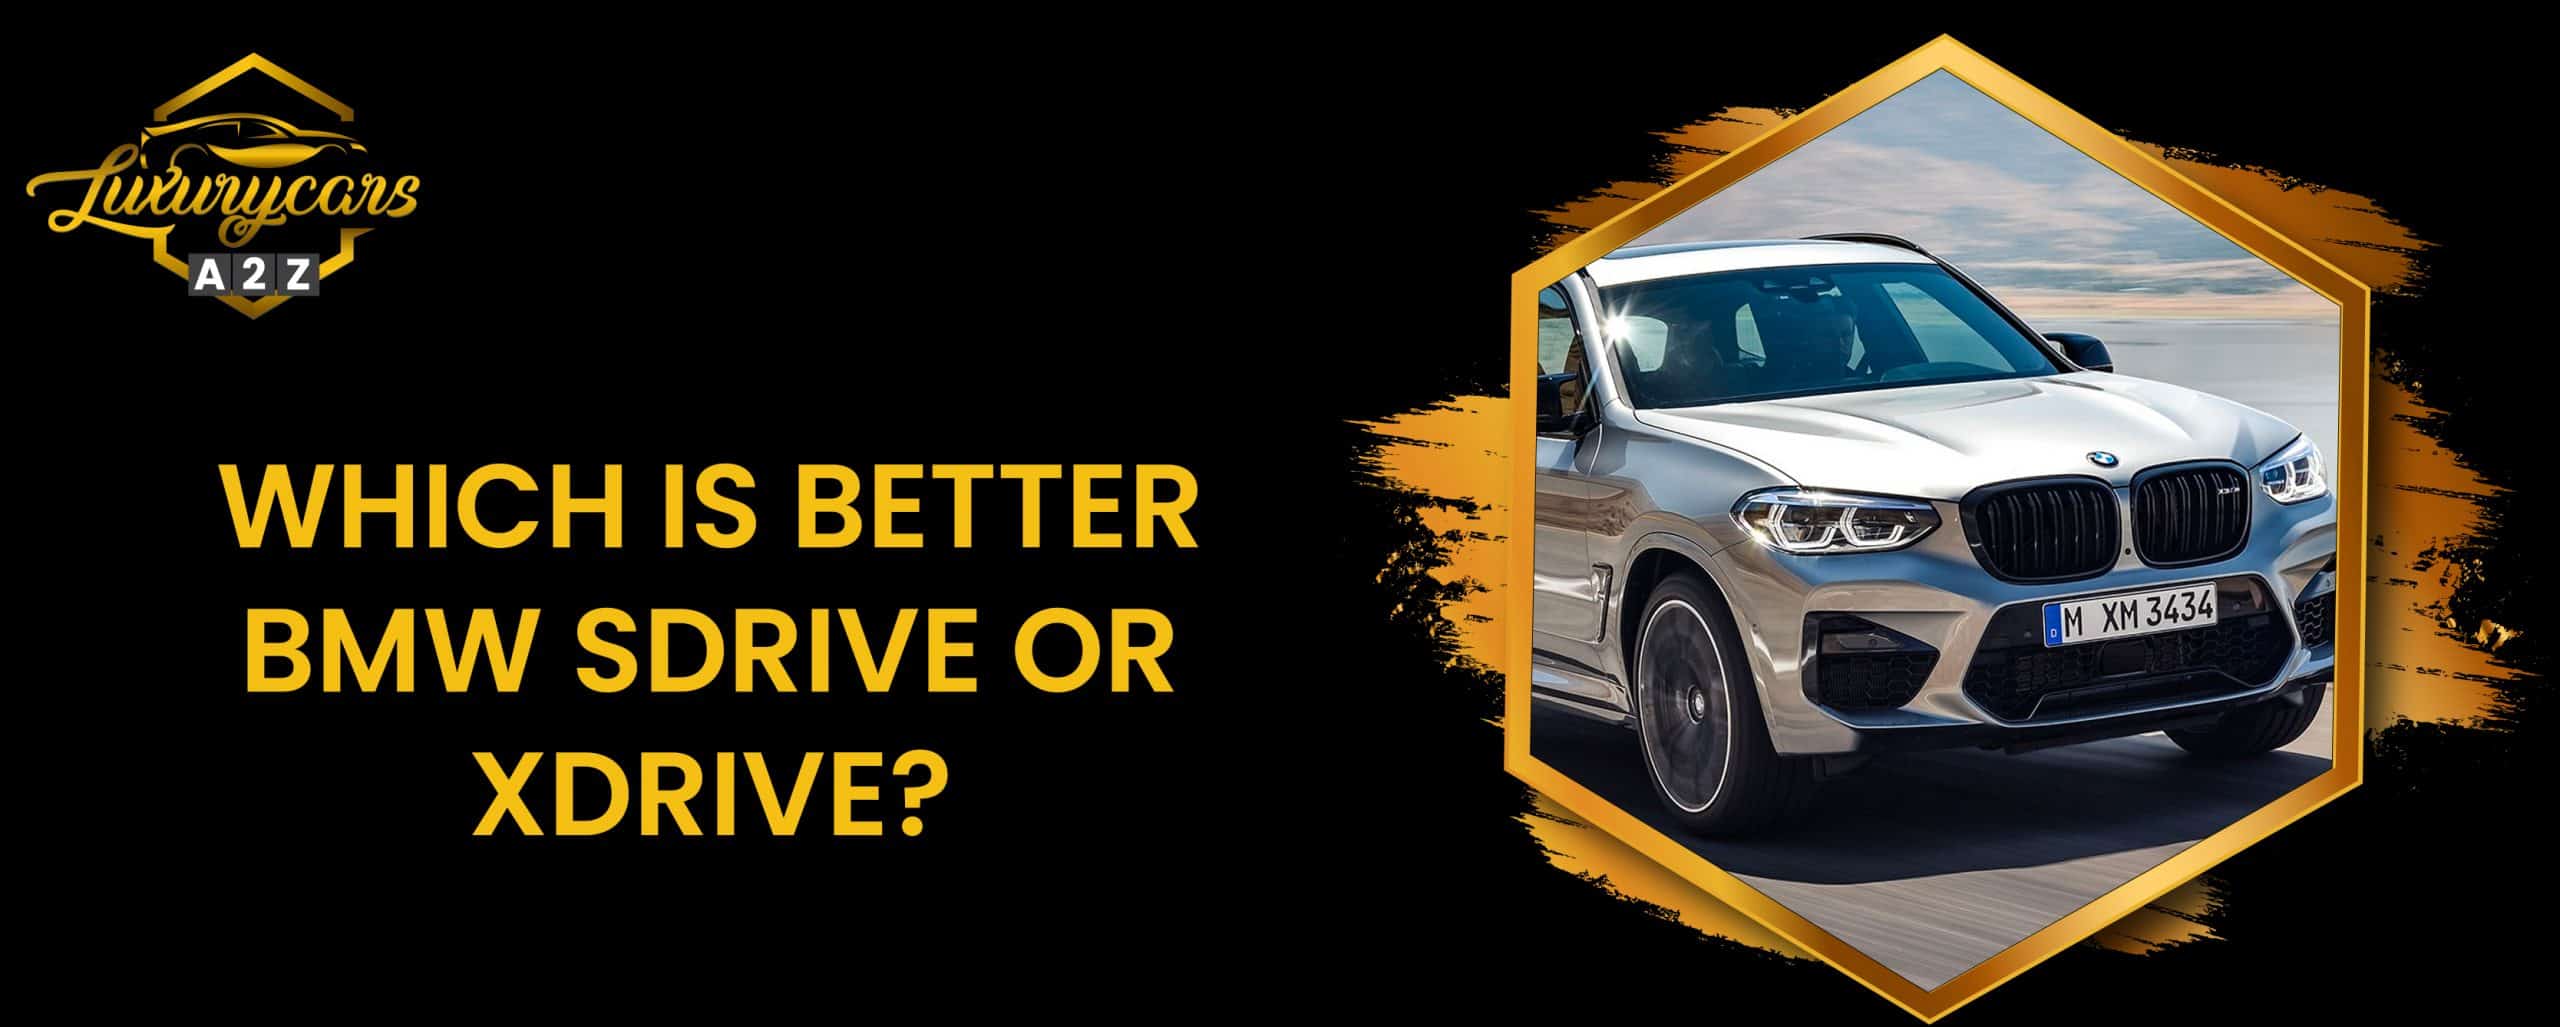 Lequel est le meilleur, BMW sDrive ou xDrive ?